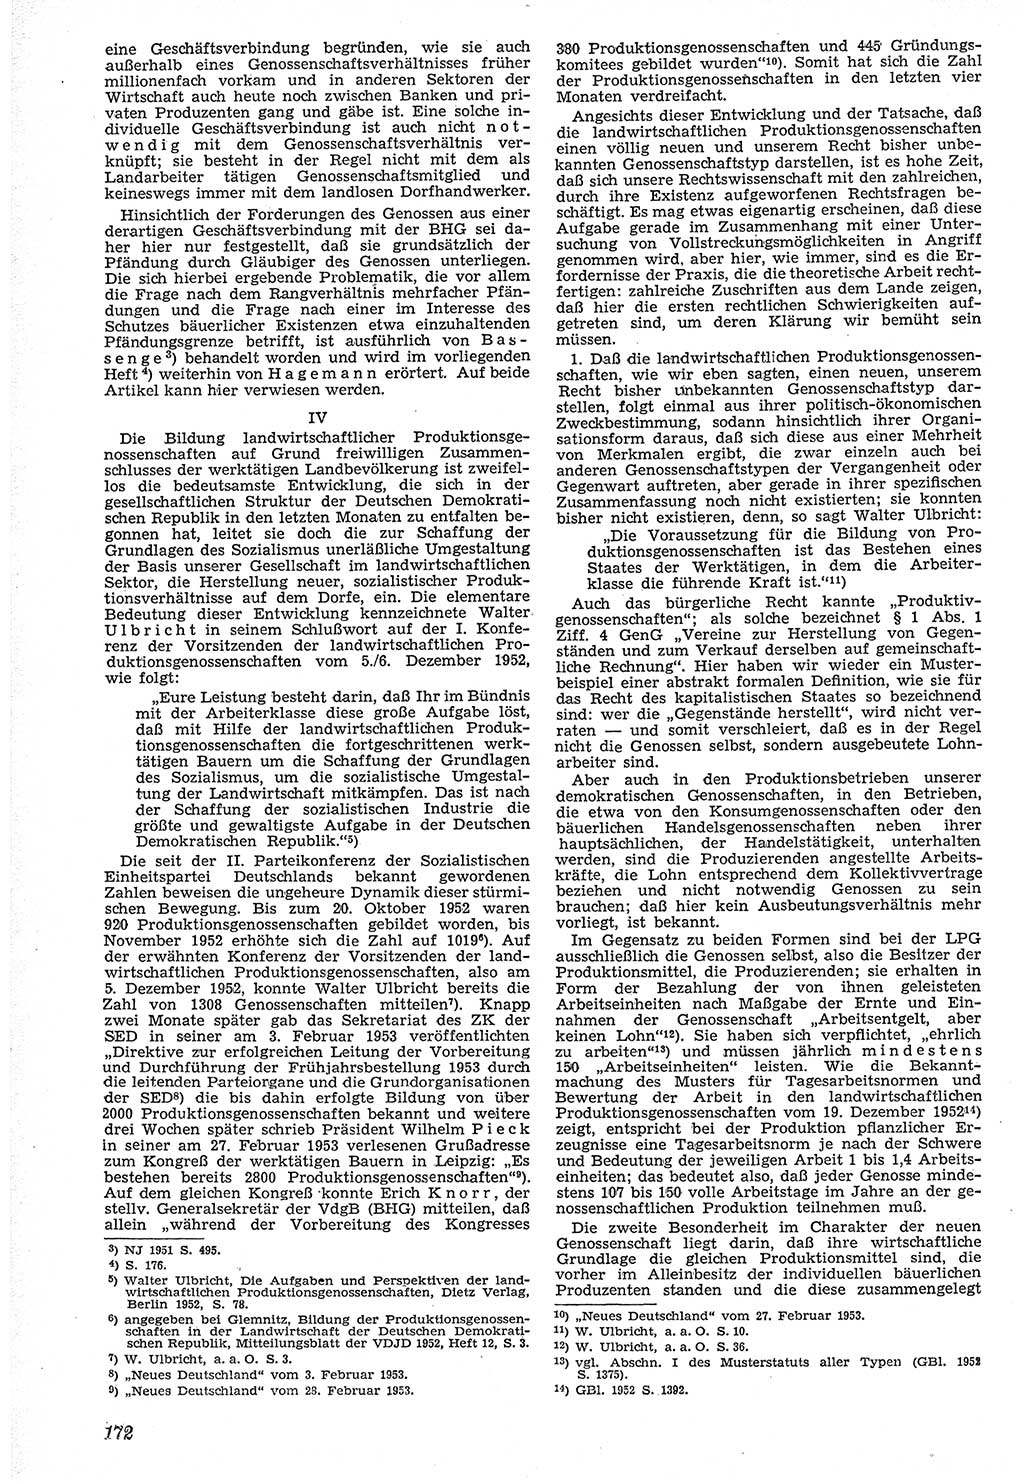 Neue Justiz (NJ), Zeitschrift für Recht und Rechtswissenschaft [Deutsche Demokratische Republik (DDR)], 7. Jahrgang 1953, Seite 172 (NJ DDR 1953, S. 172)